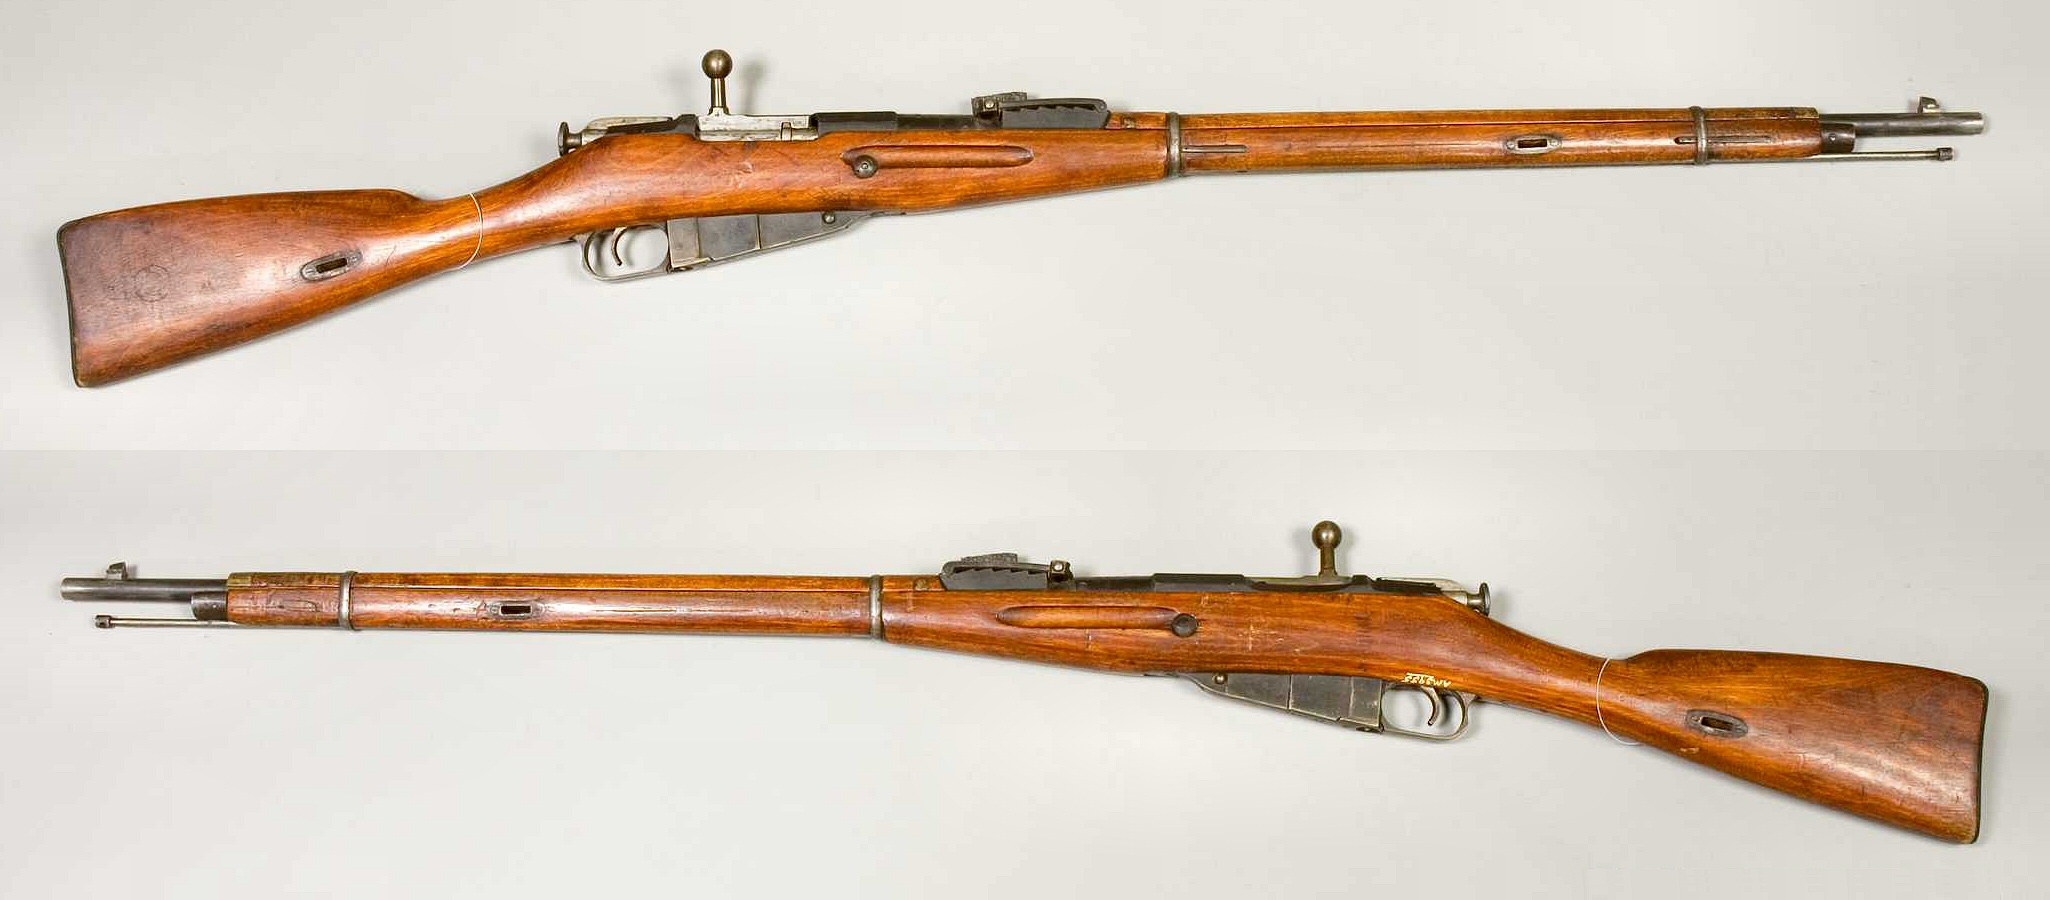 A Mosin Nagant Rifle